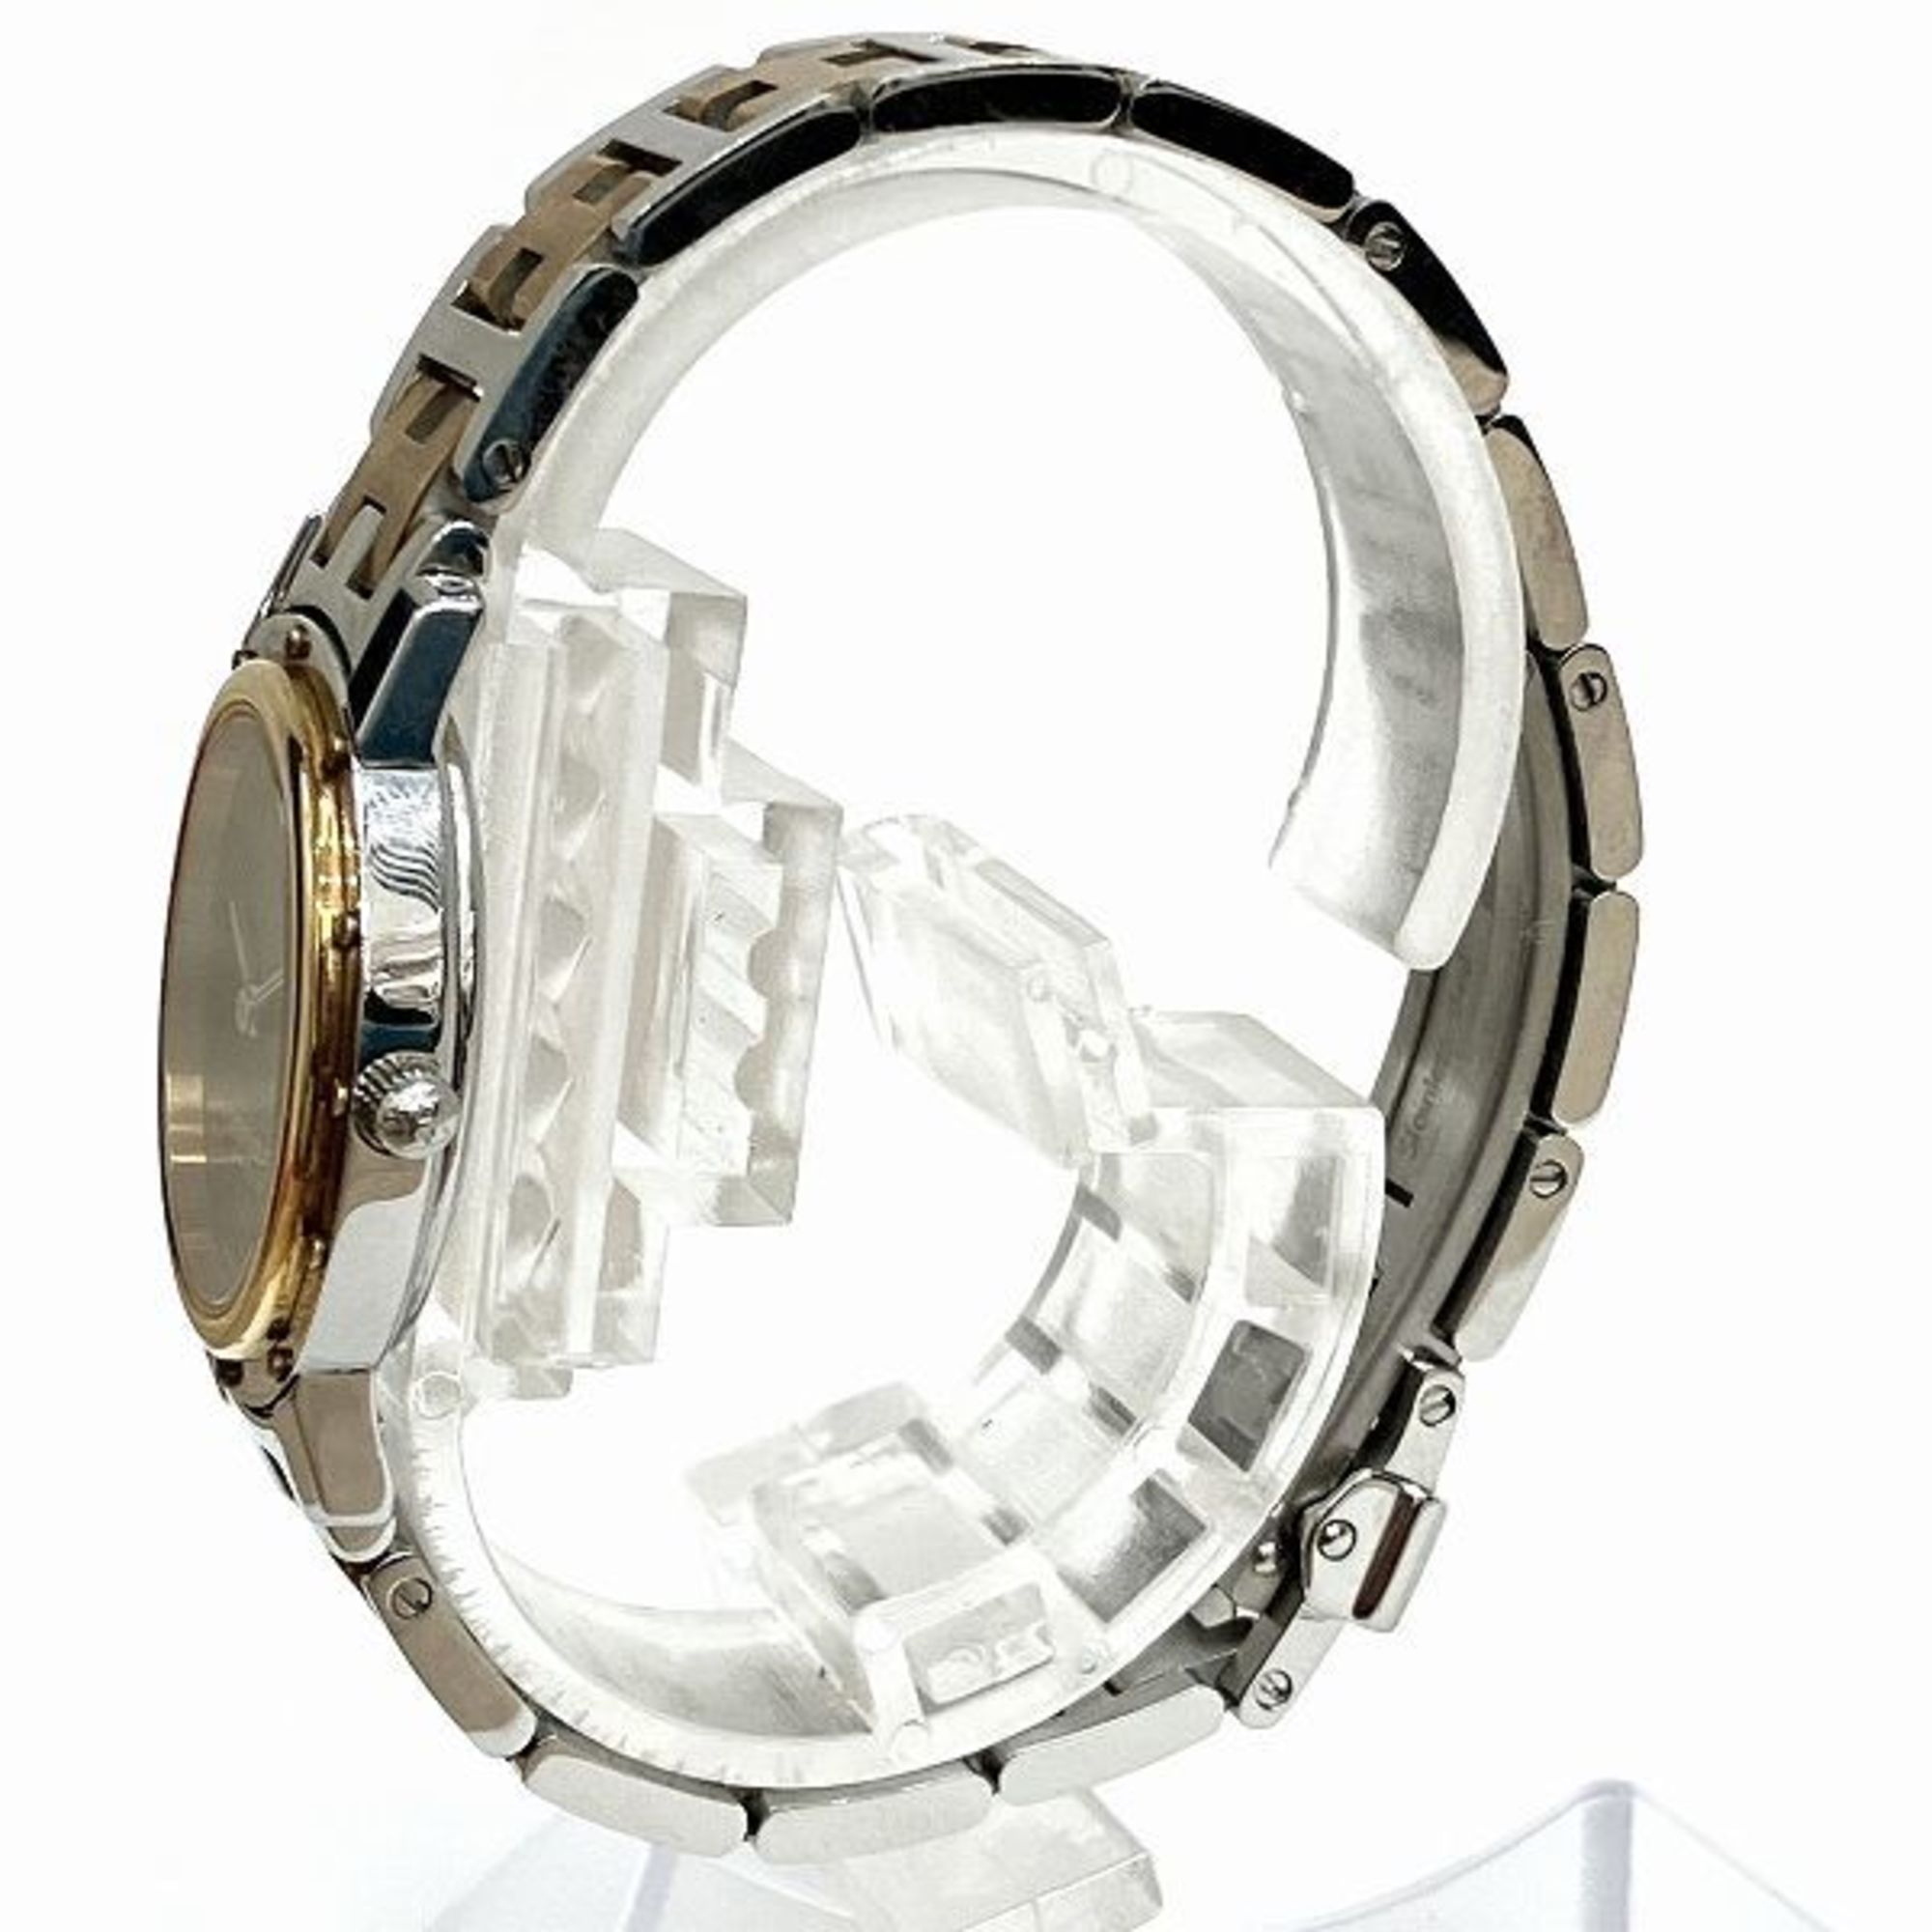 Hermes Clipper Oval CO1.220 Quartz Black Dial Watch Ladies